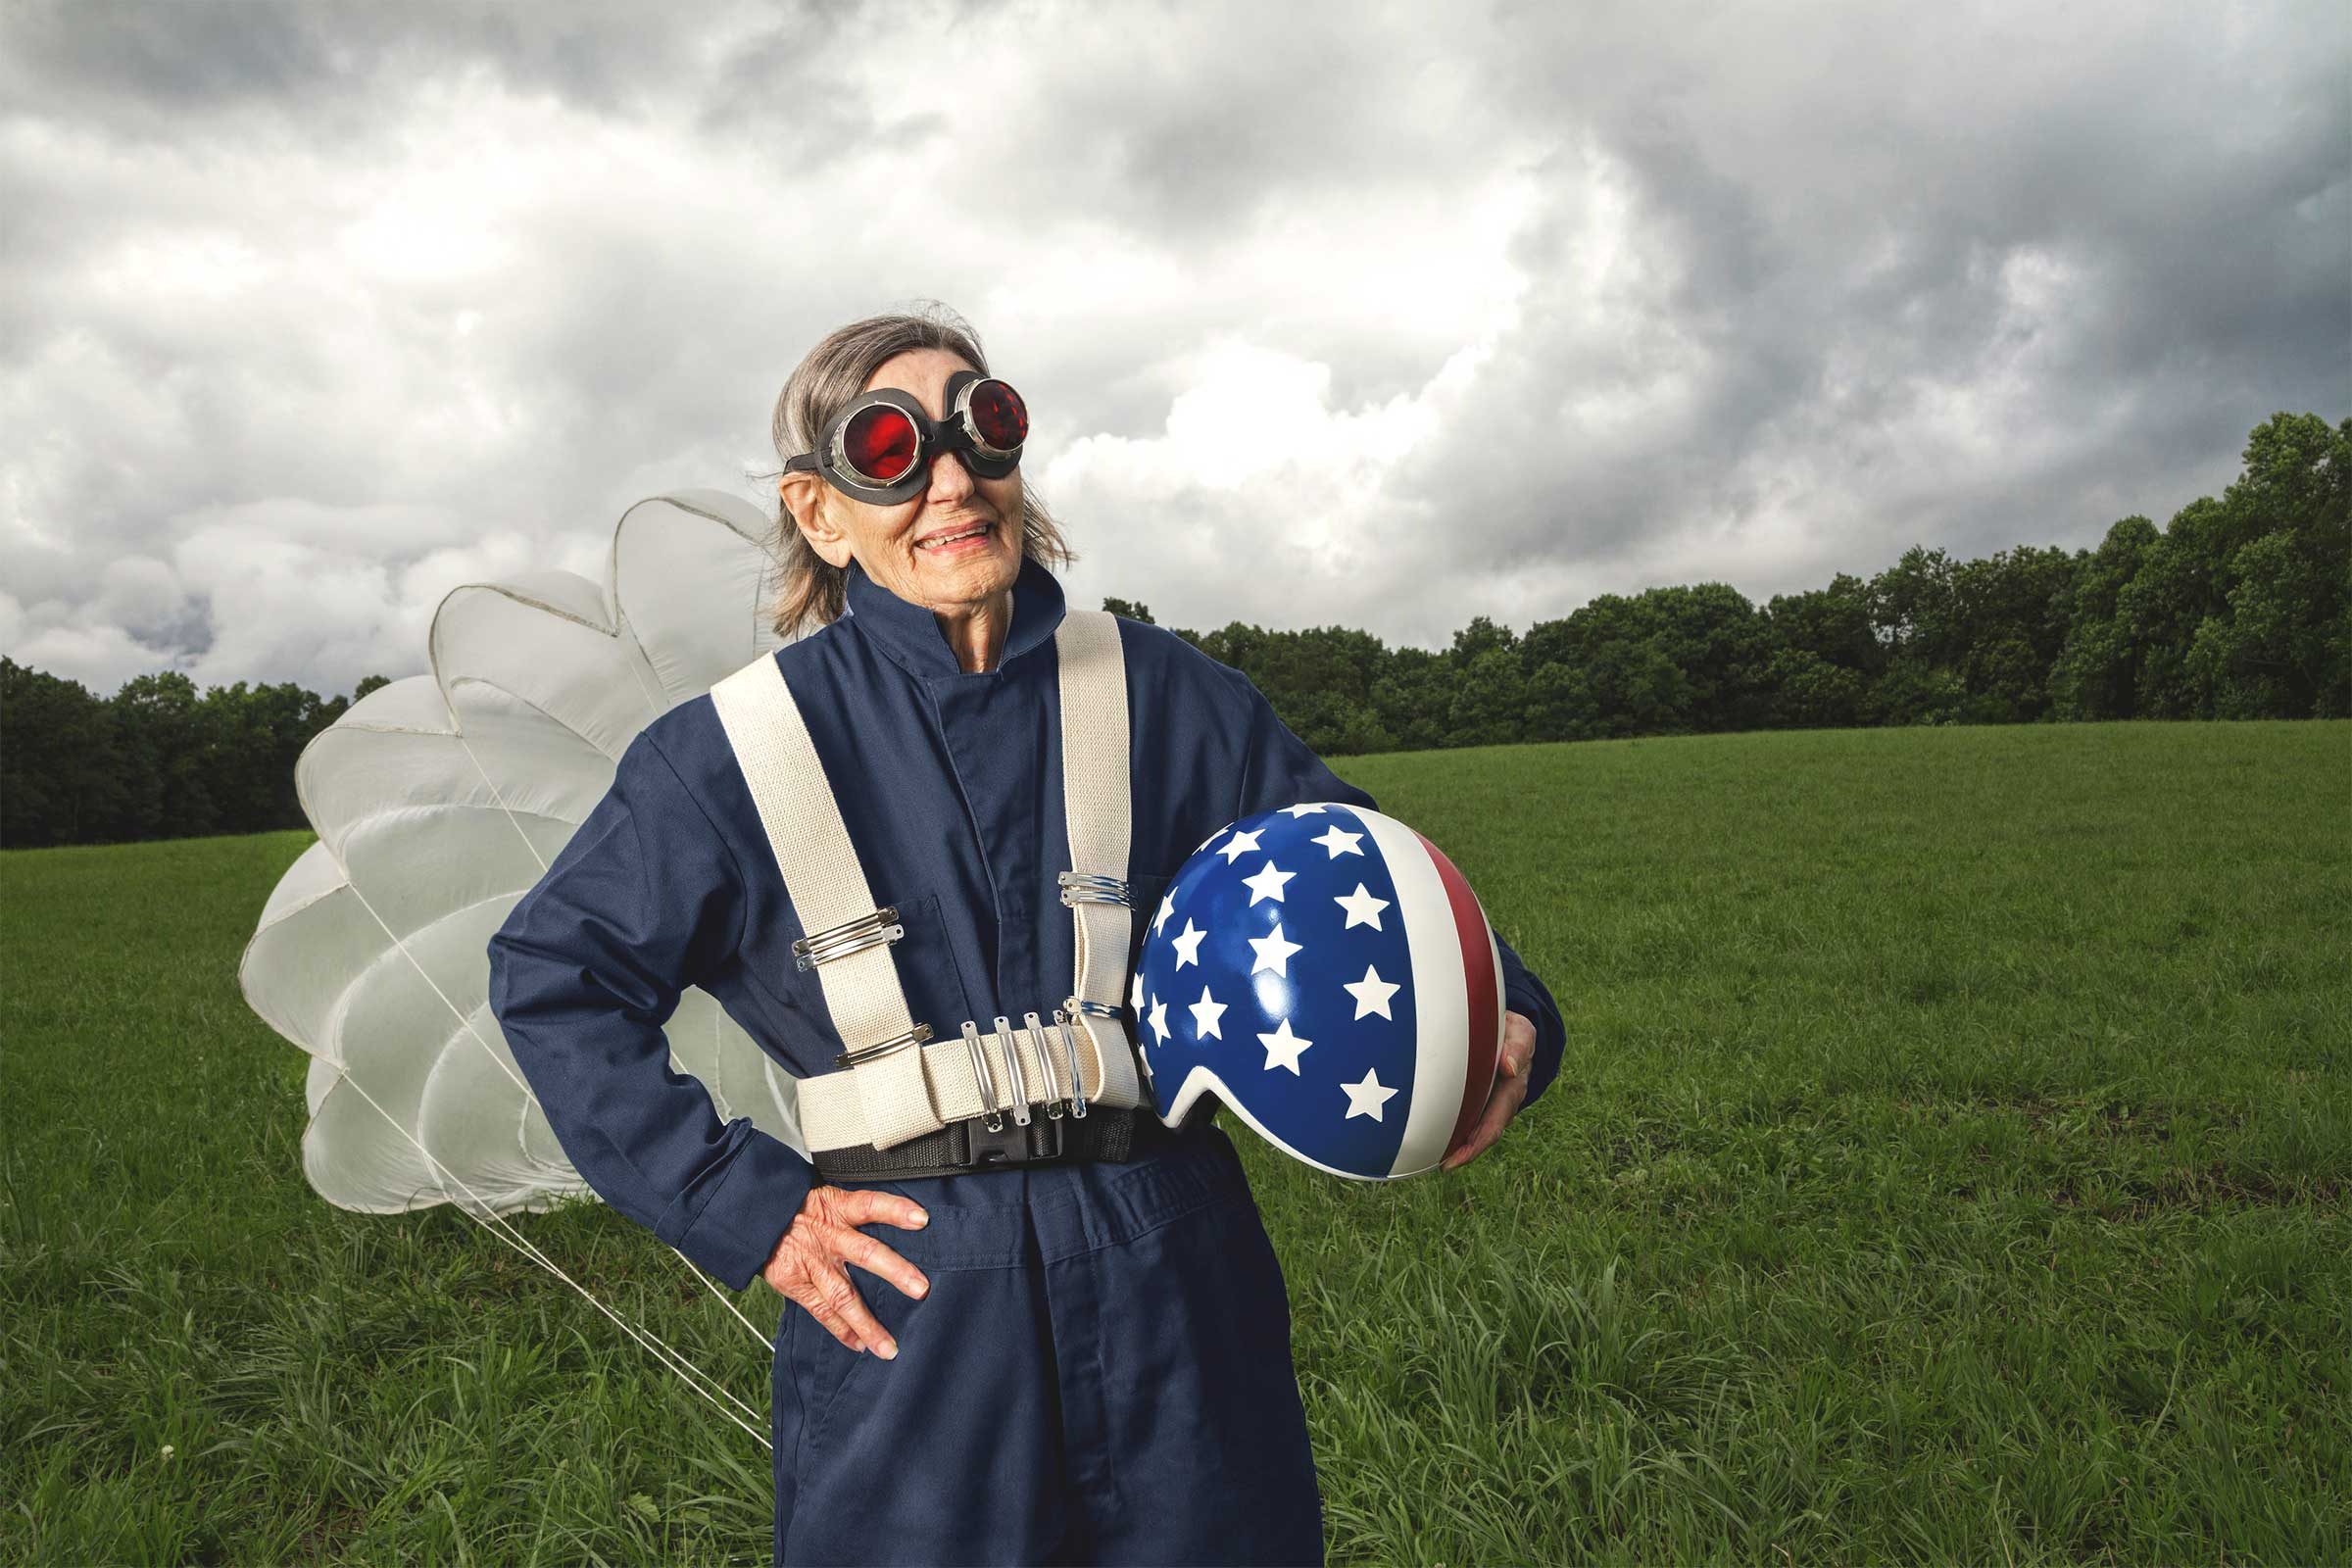 12 cose che devi sapere se il paracadutismo è nella tua lista dei desideri 